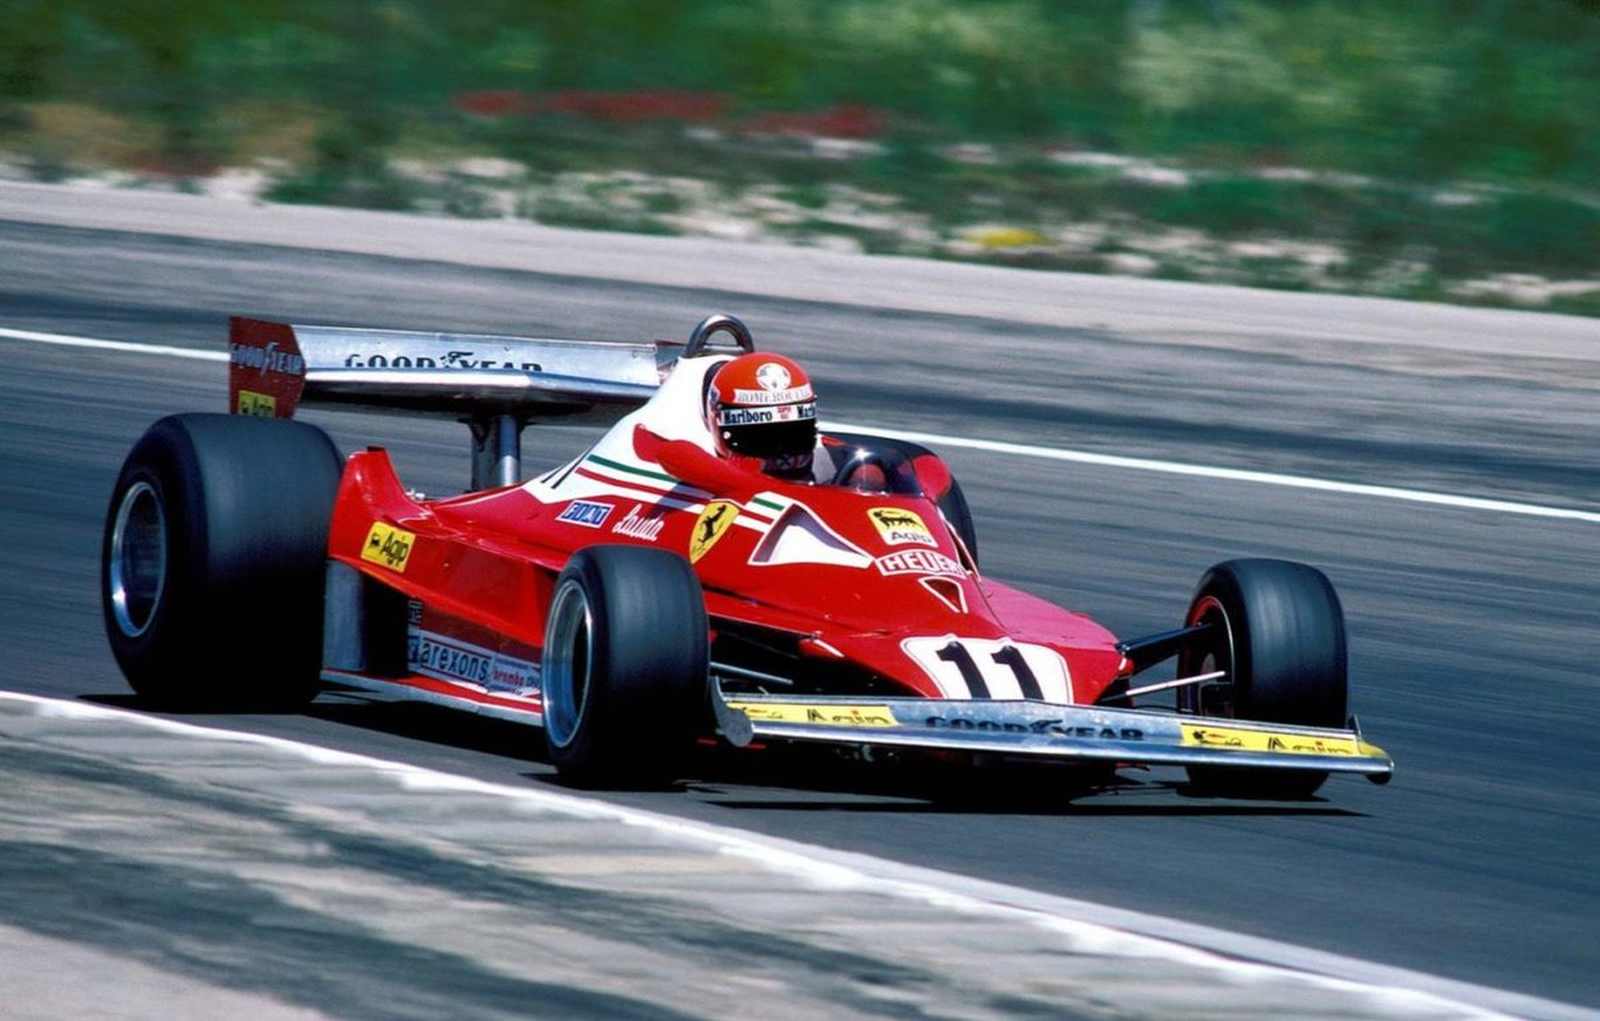 Recuperado, Lauda foi impecável e conquistou o título de 1977